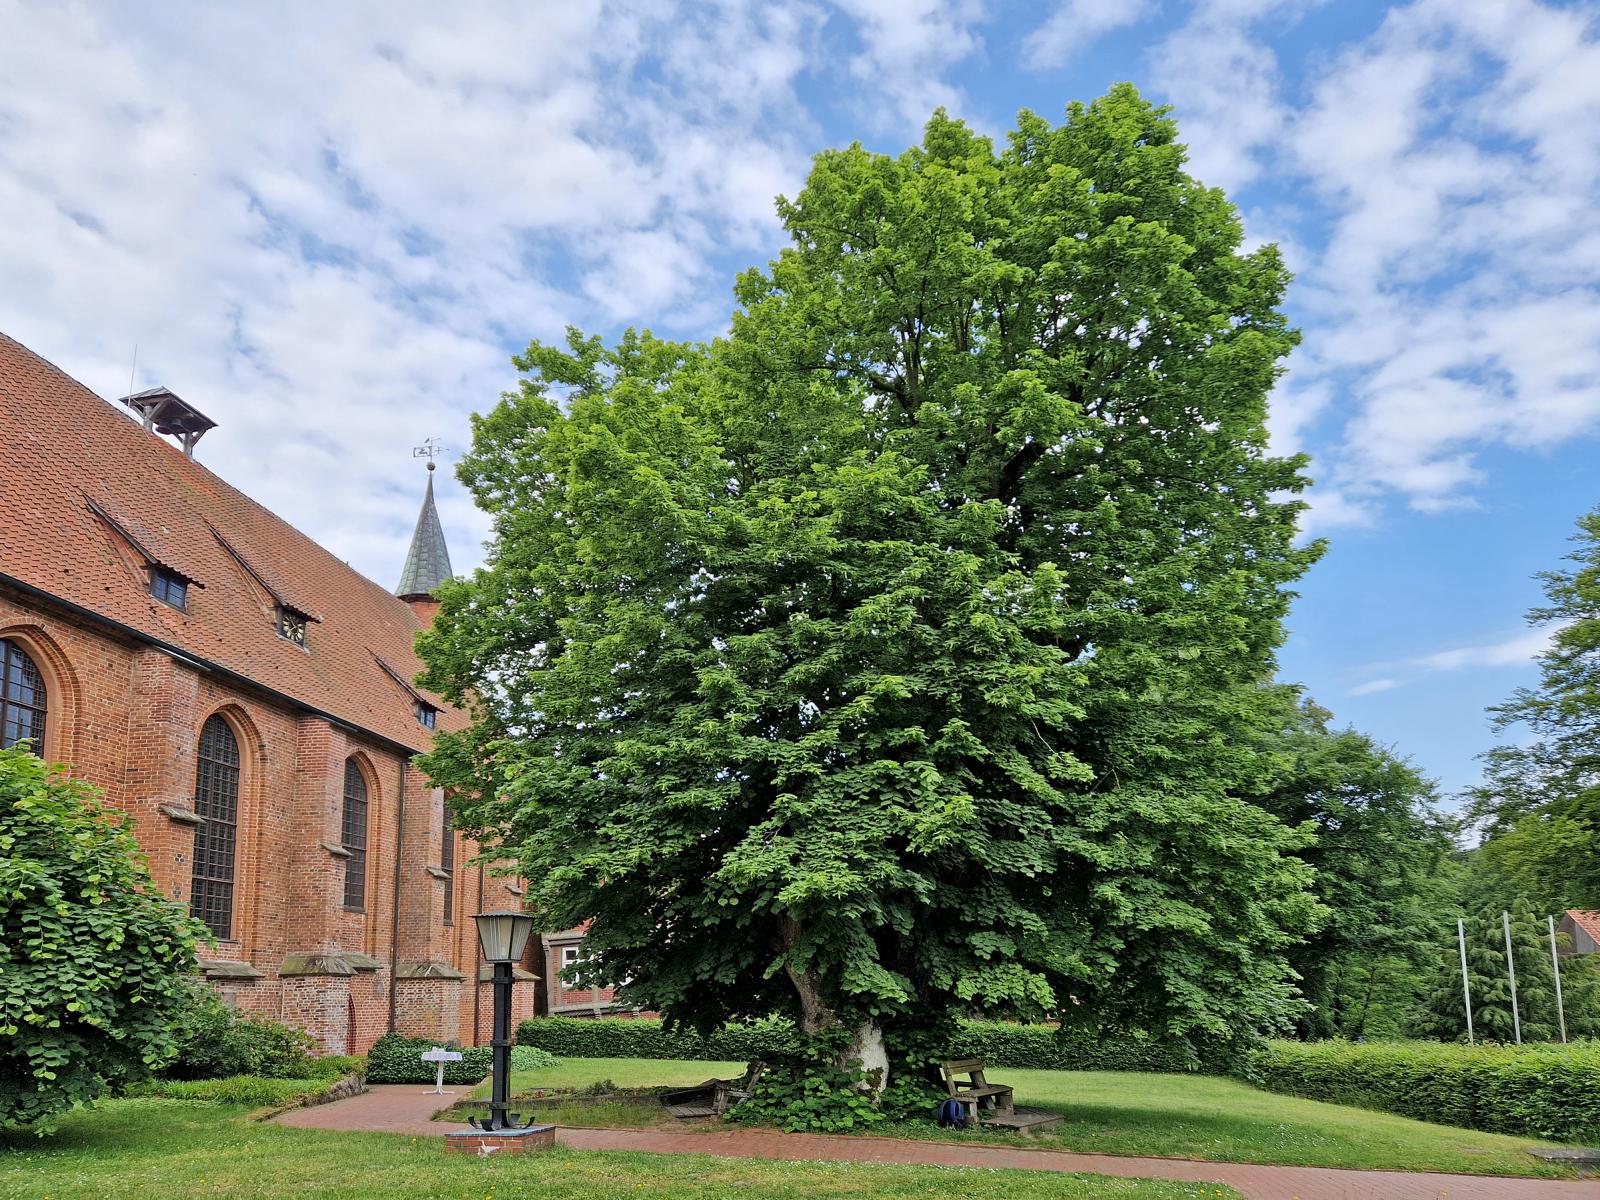 Klosterlinde Hankensbüttel-Isenhagen: …direkt vor der Stiftskirche: der Baum muss hier von seinem ersten Lebensjahr an eine herausragende Bedeutung und Bestimmung gehabt haben